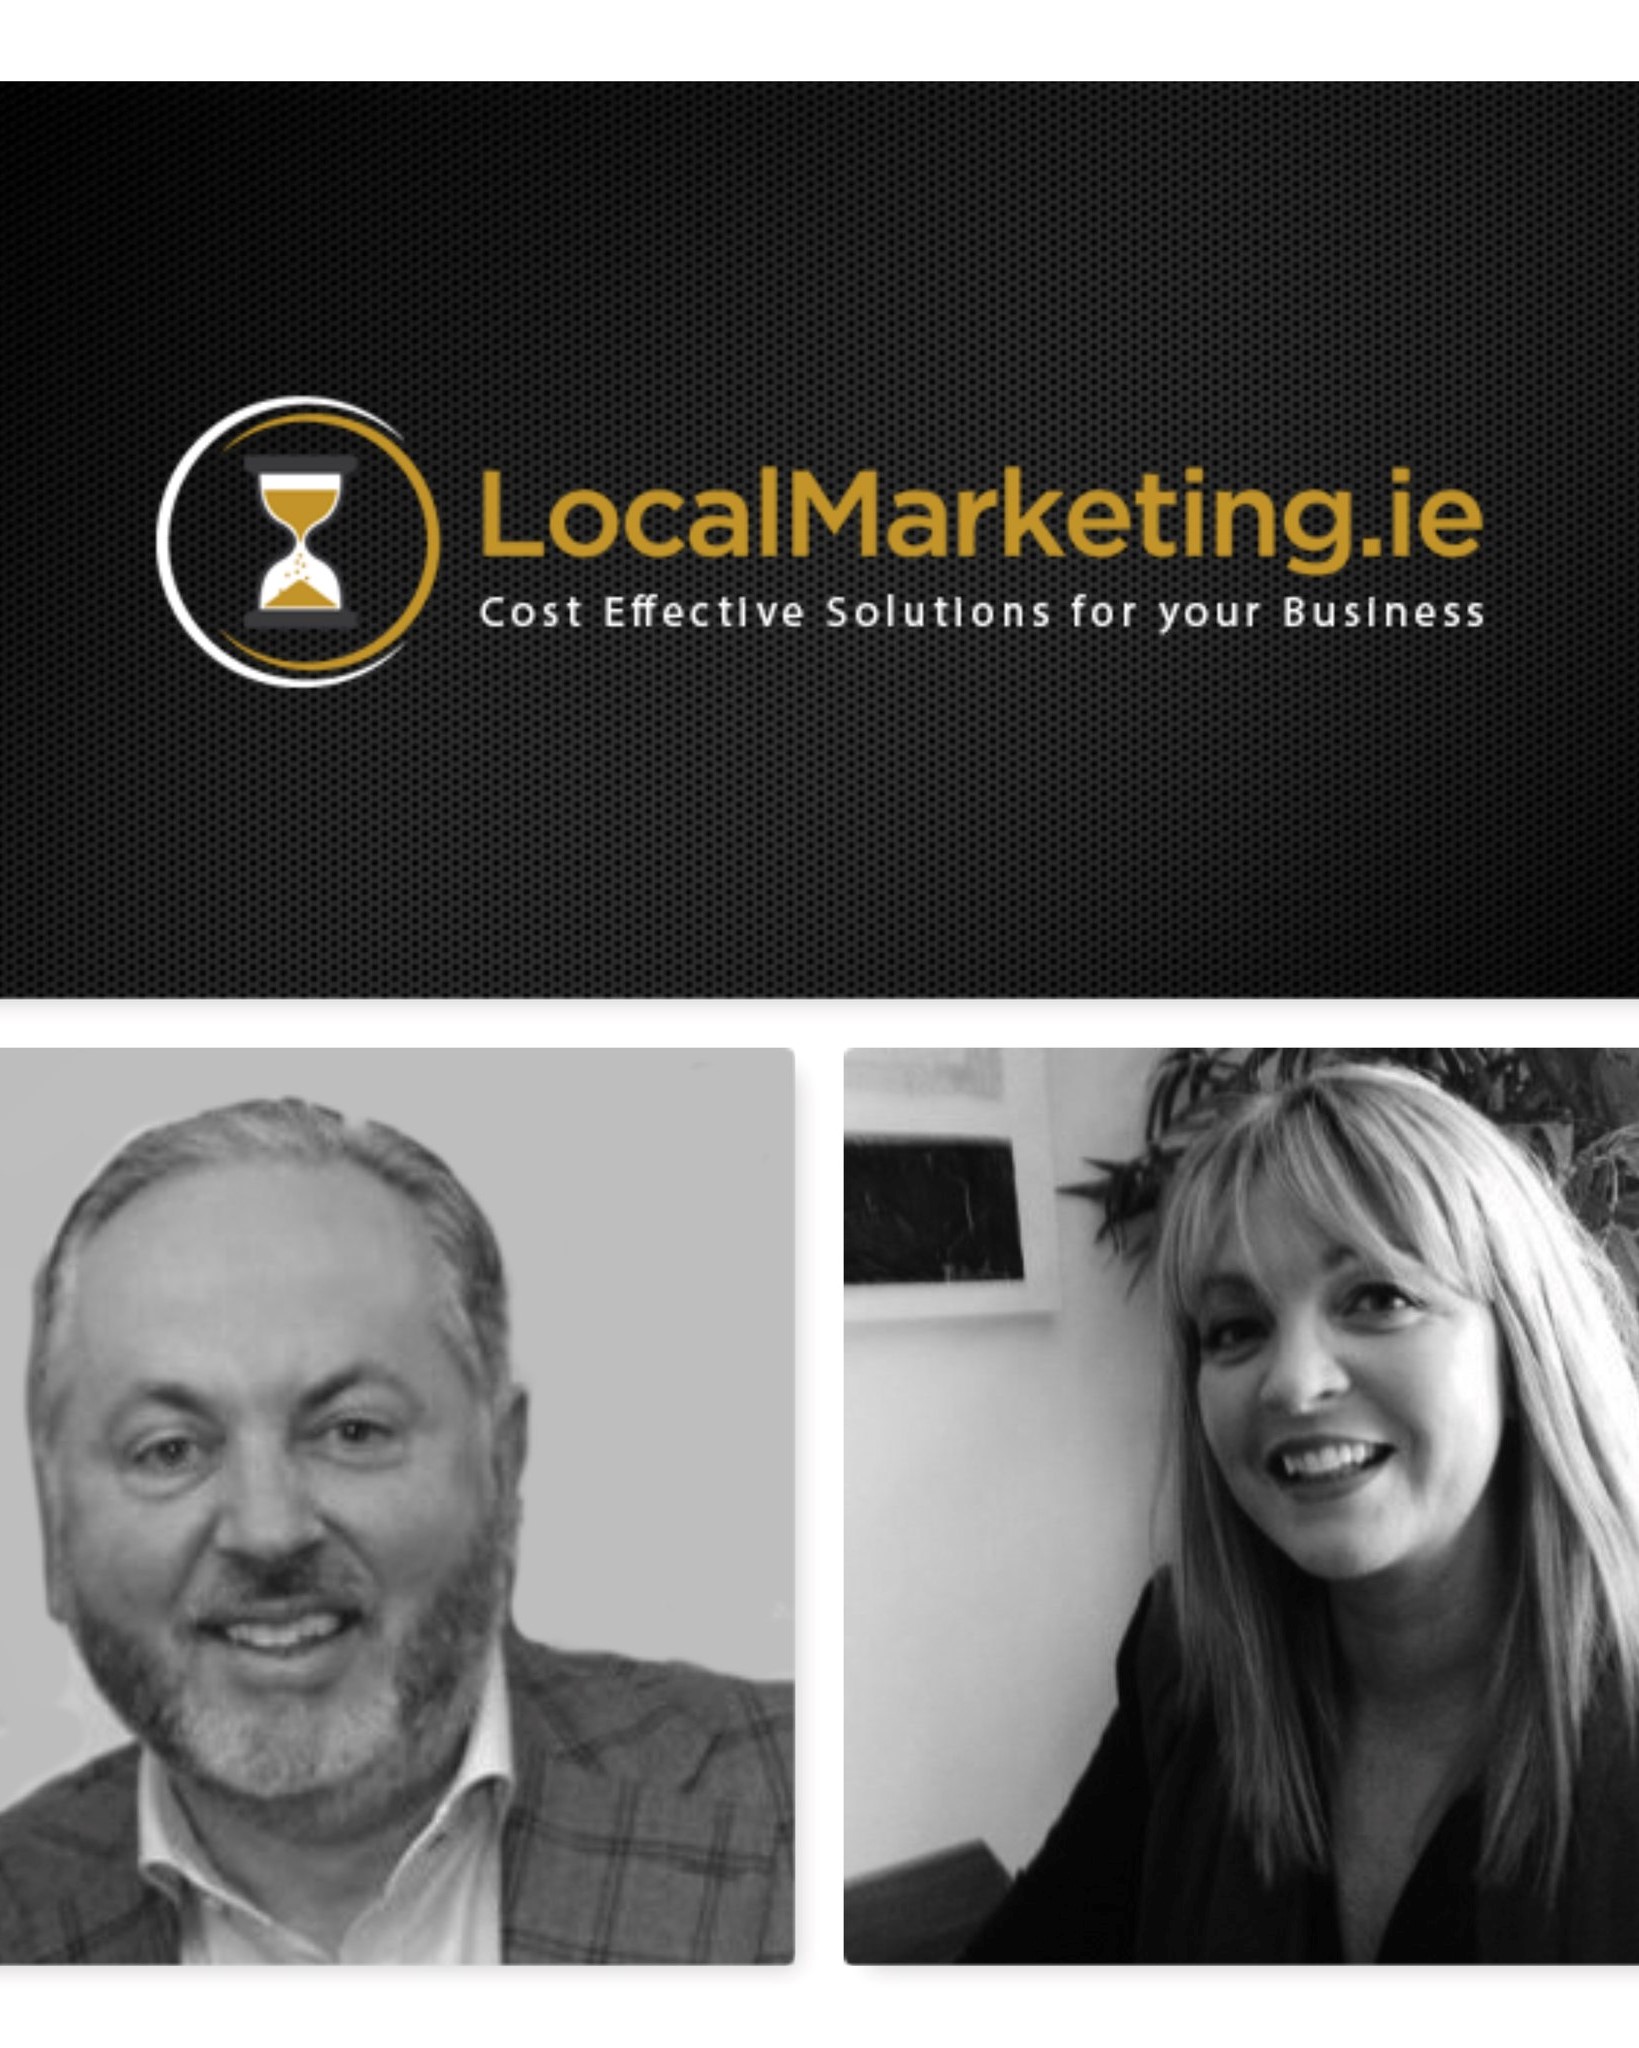 LocalMarketing.ie win “Best Travel & Leisure Marketing Consultancy” Award